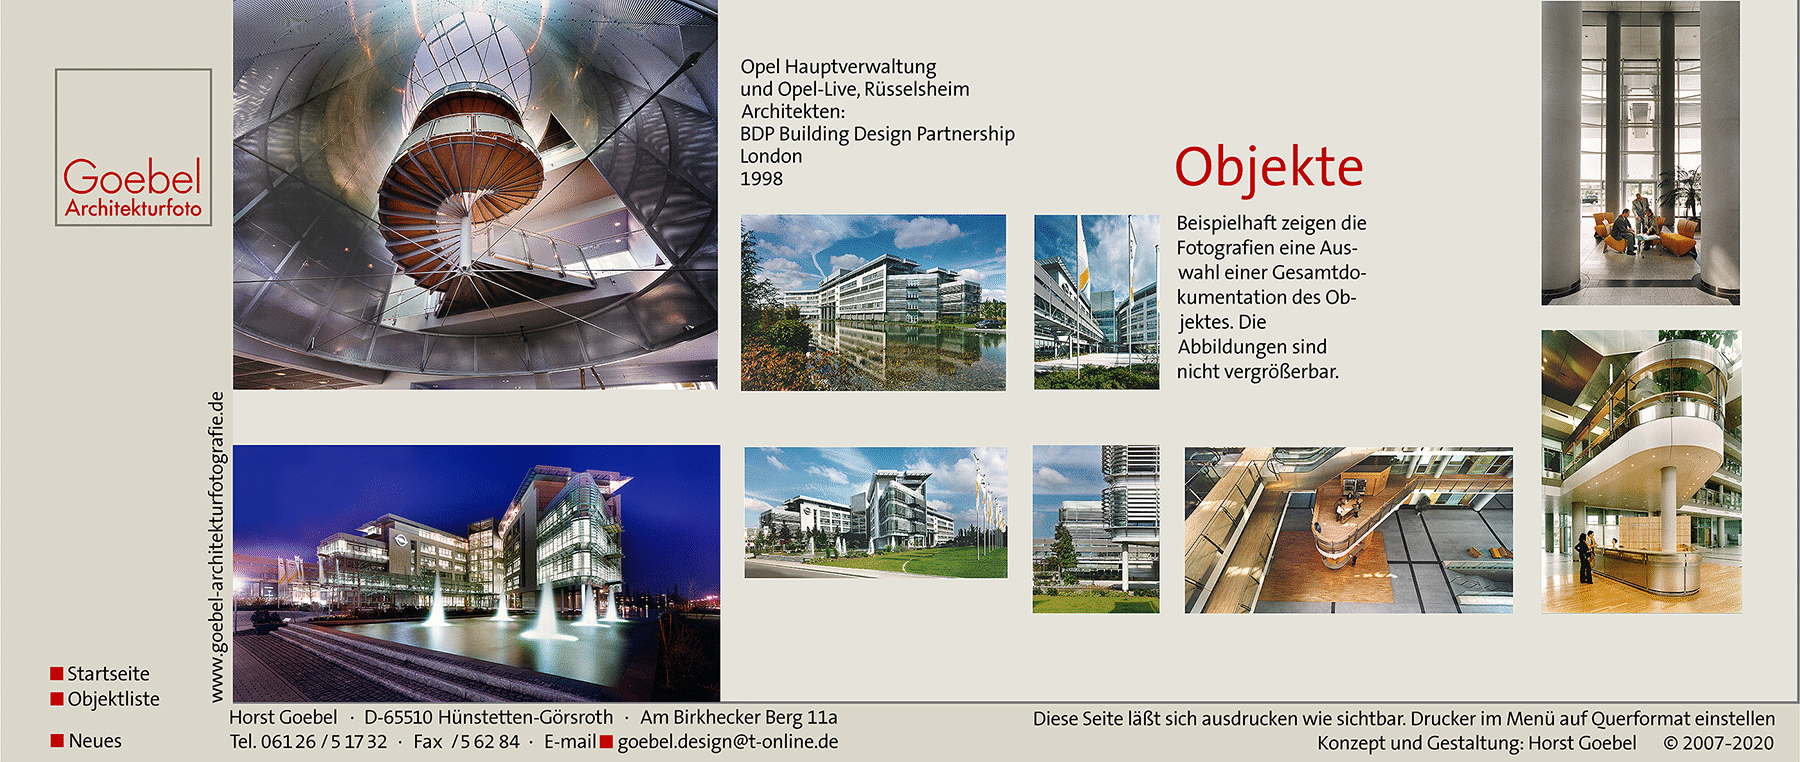 Architekturfotograf Frankfurt  Opel  Goebel1